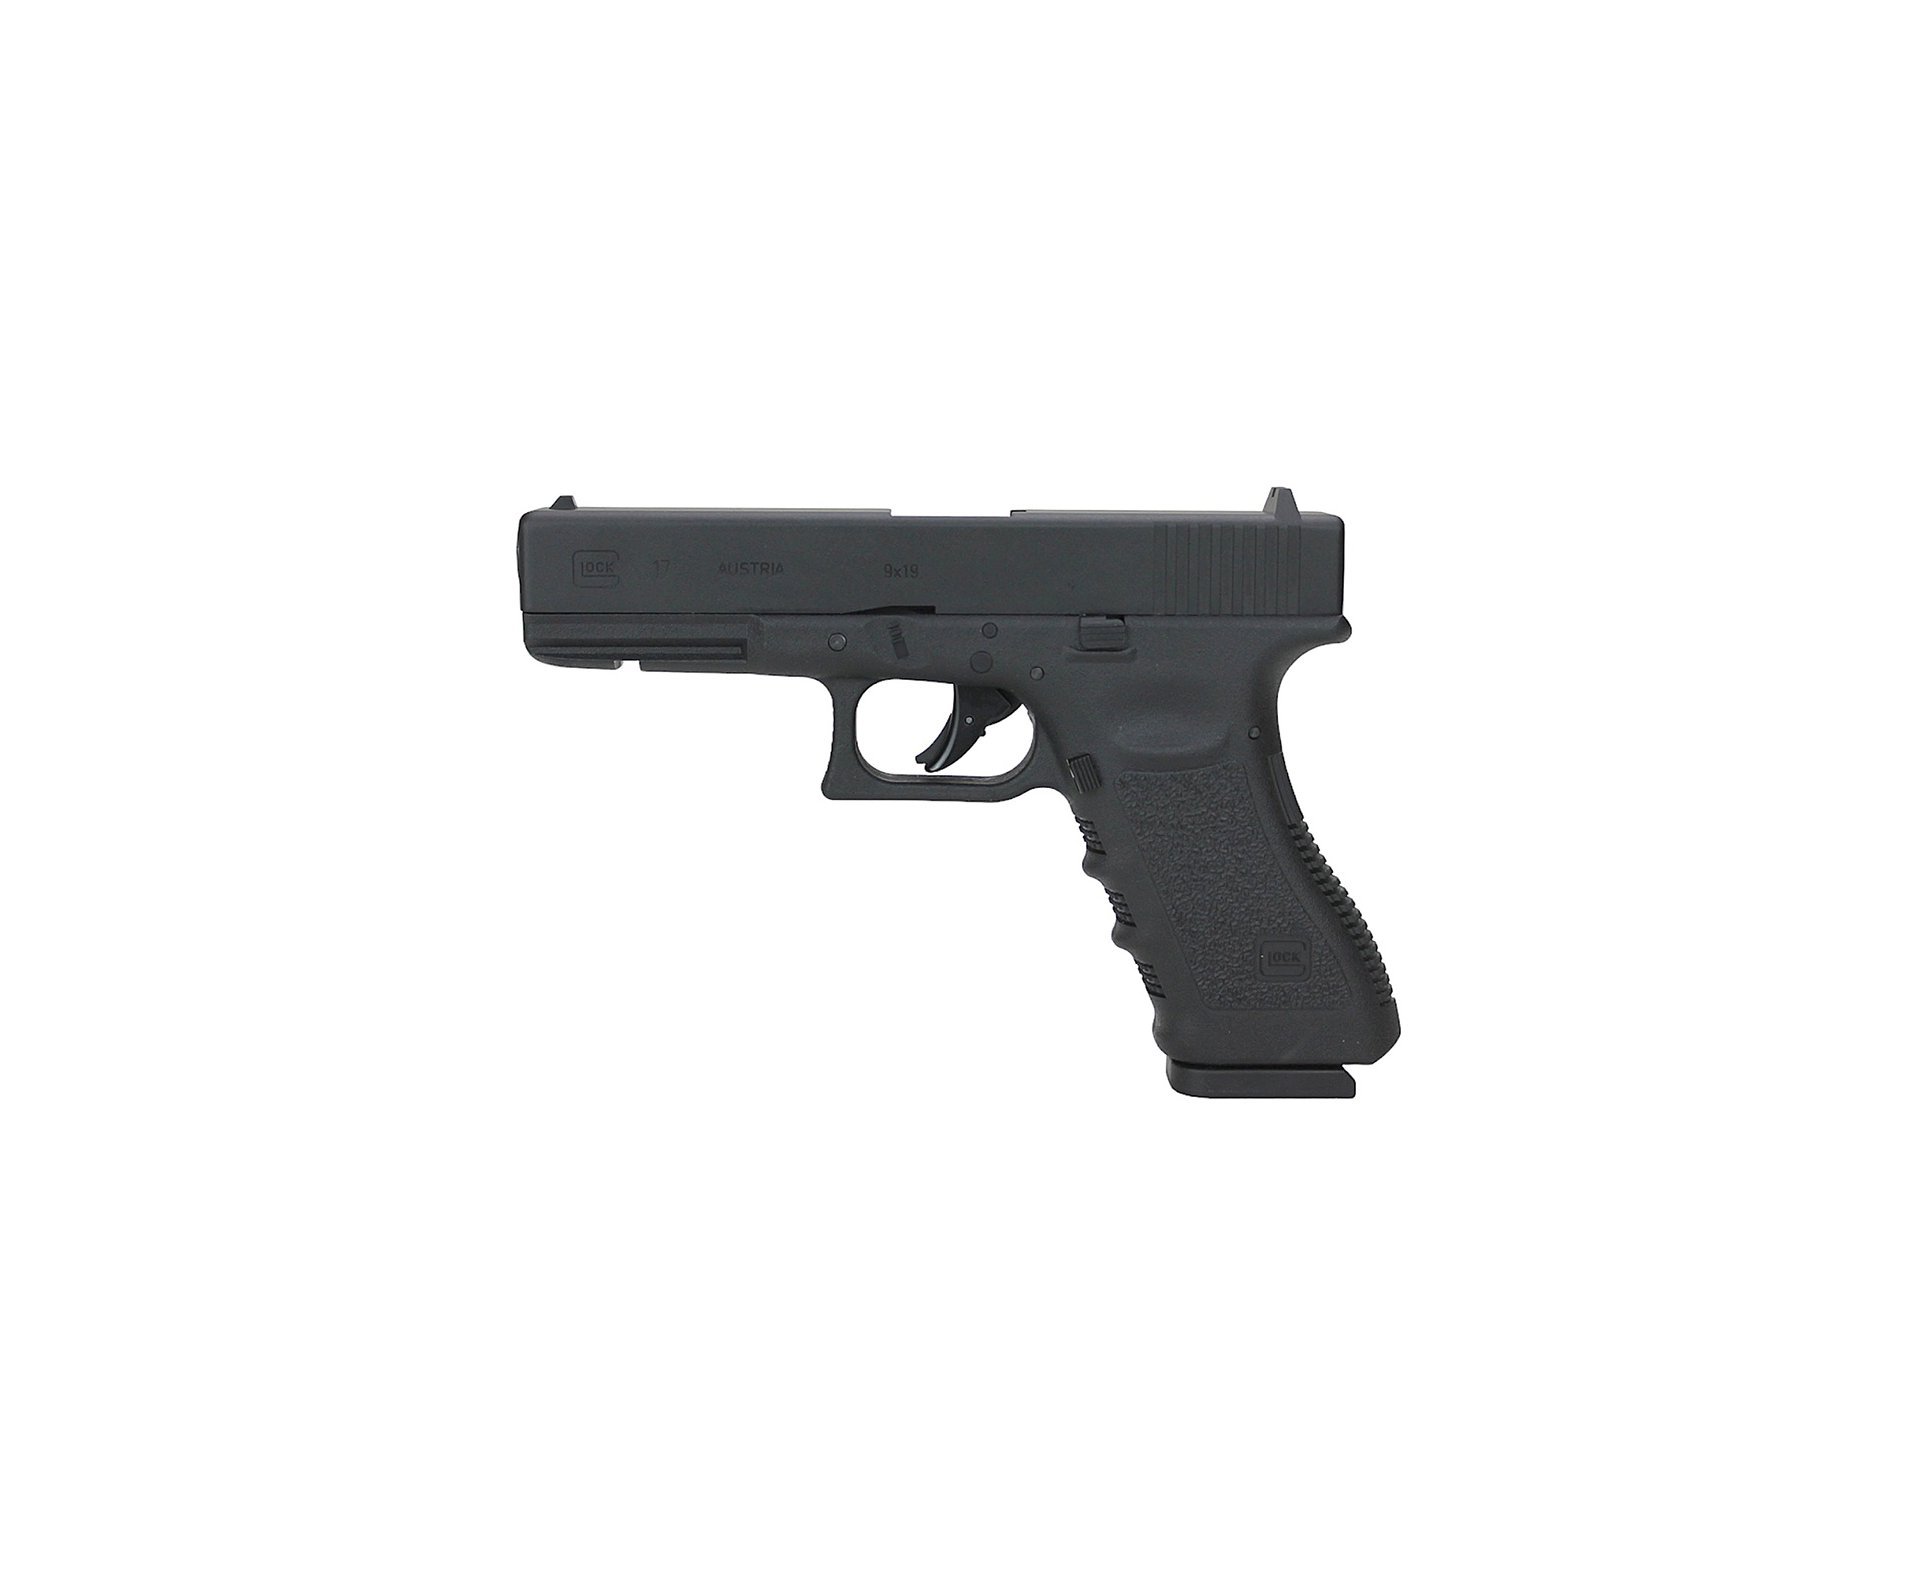 Artefato de Pressão Co2 Glock G17 4.5mm - Chumbinho